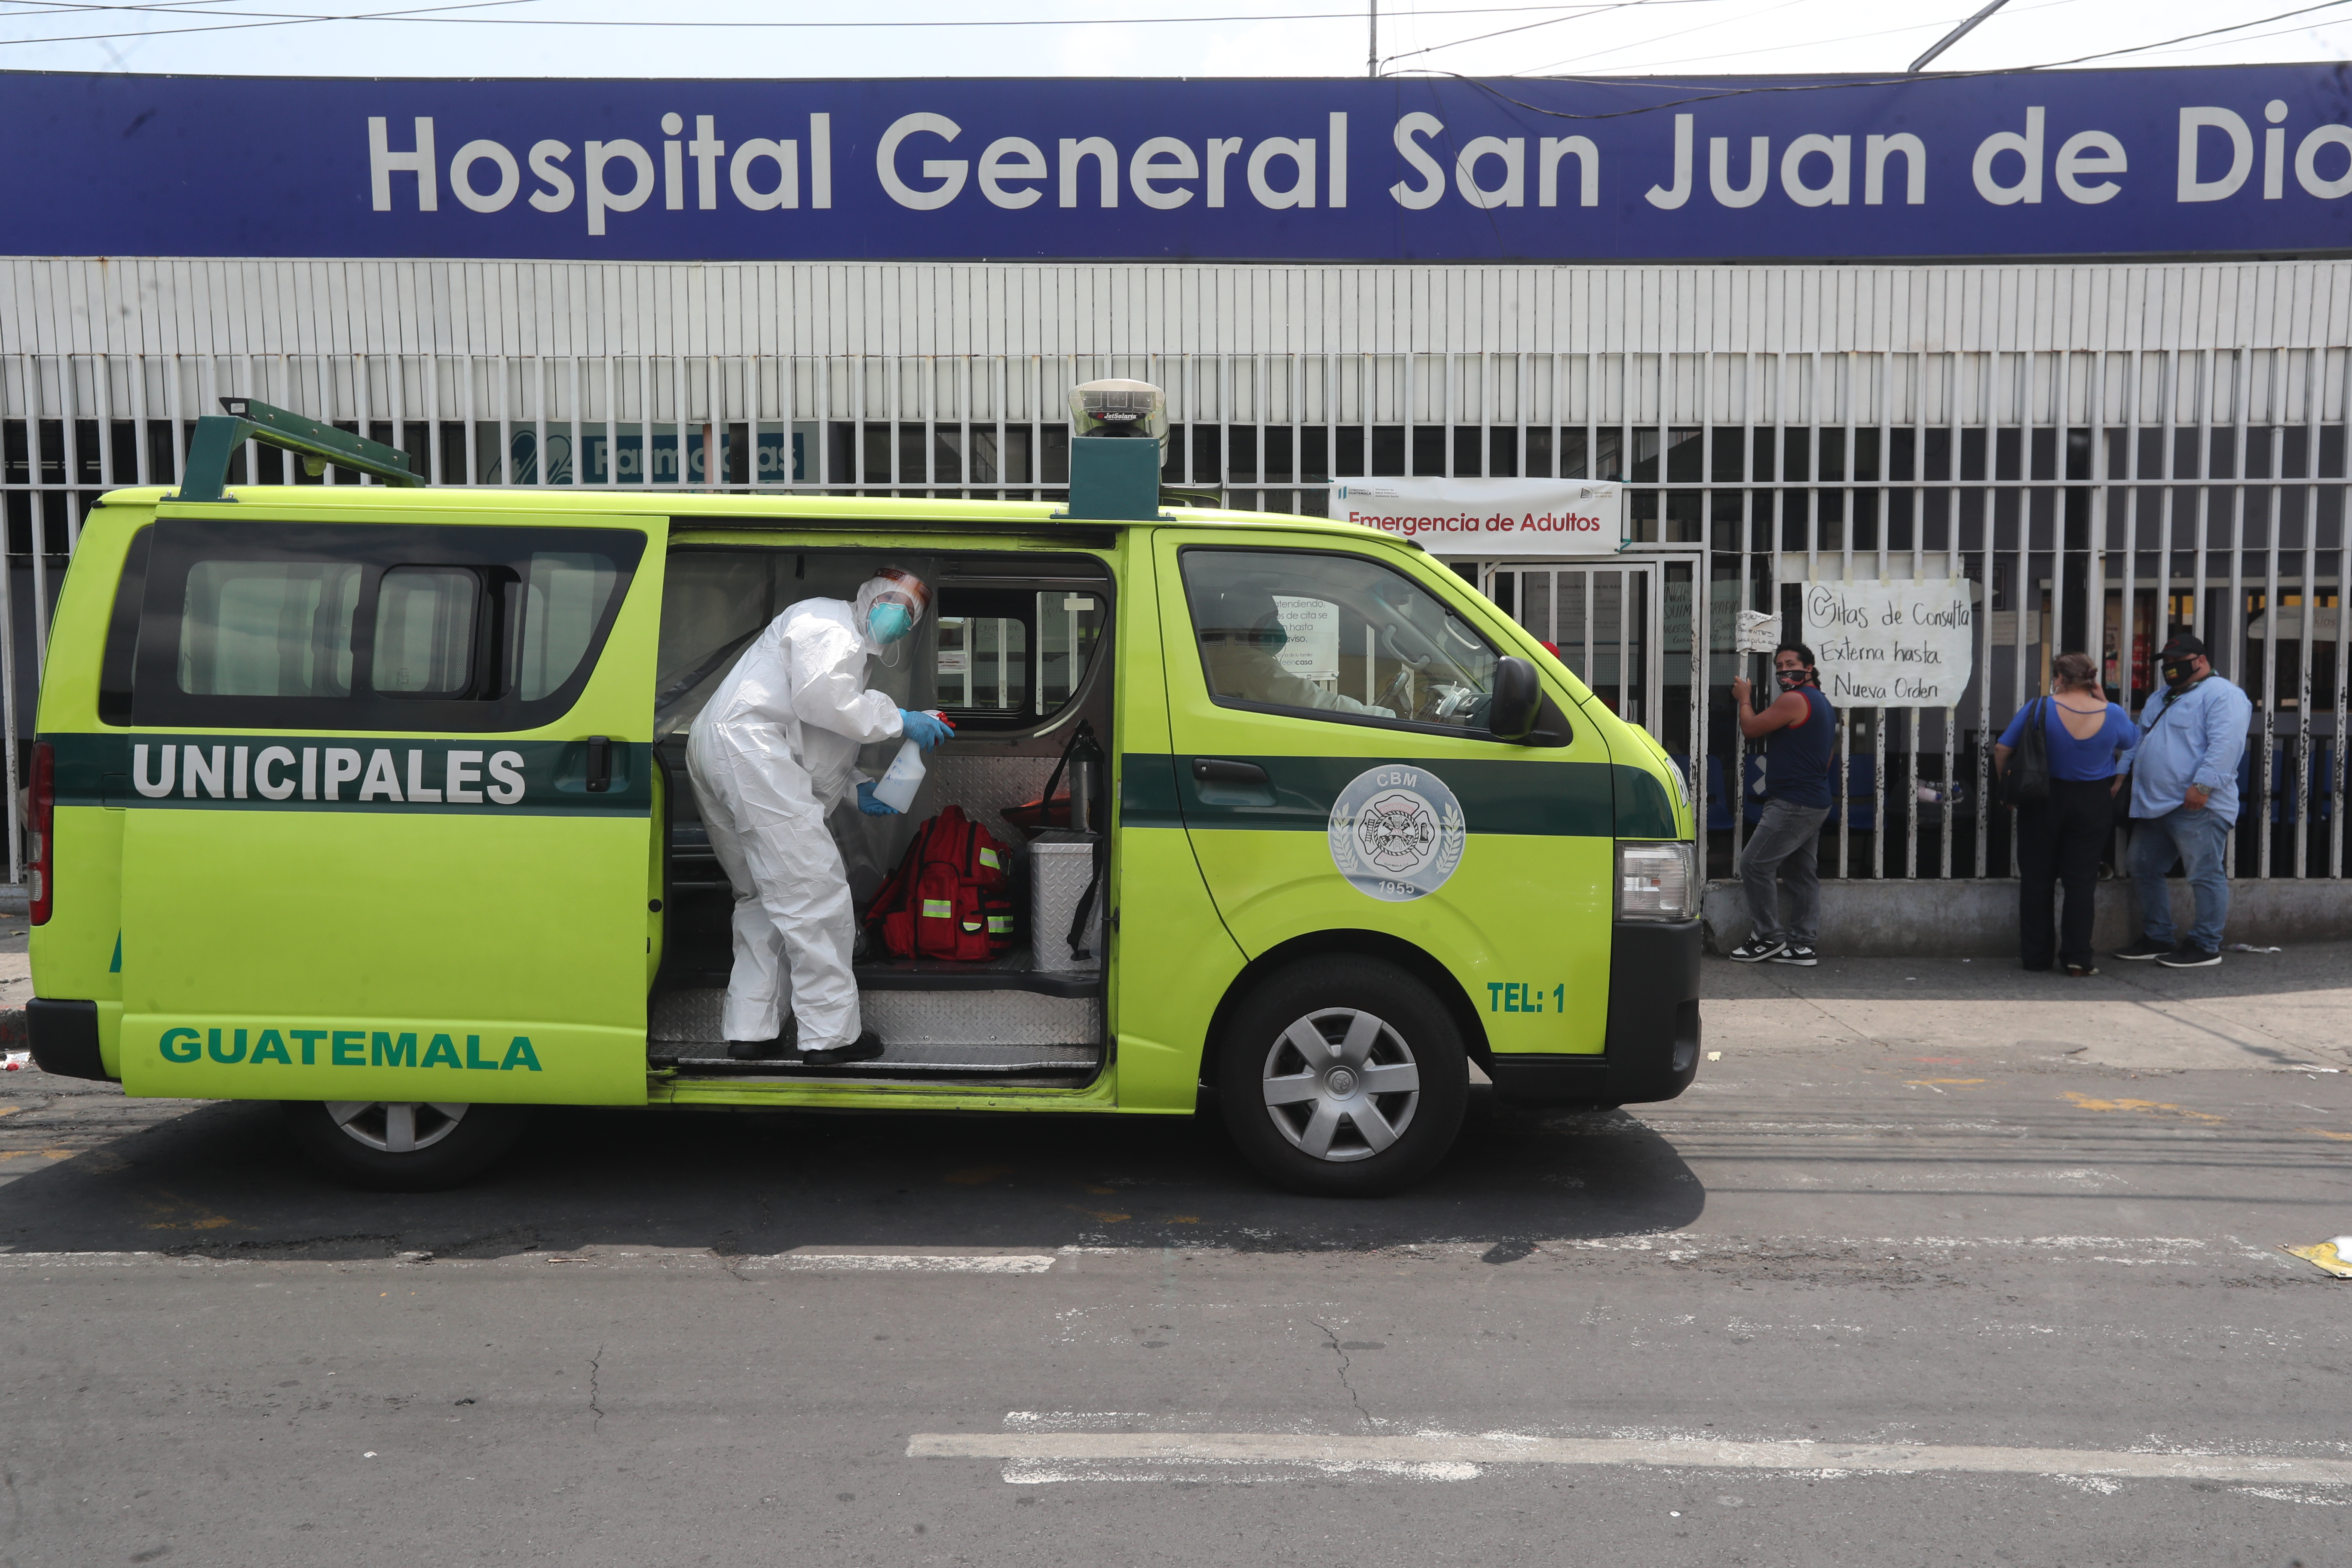 Médicos aseguran que el Hospital General San Juan de Dios está al borde del colapso por la cantidad de pacientes con covid-19. (Foto Prensa Libre: Hemeroteca).